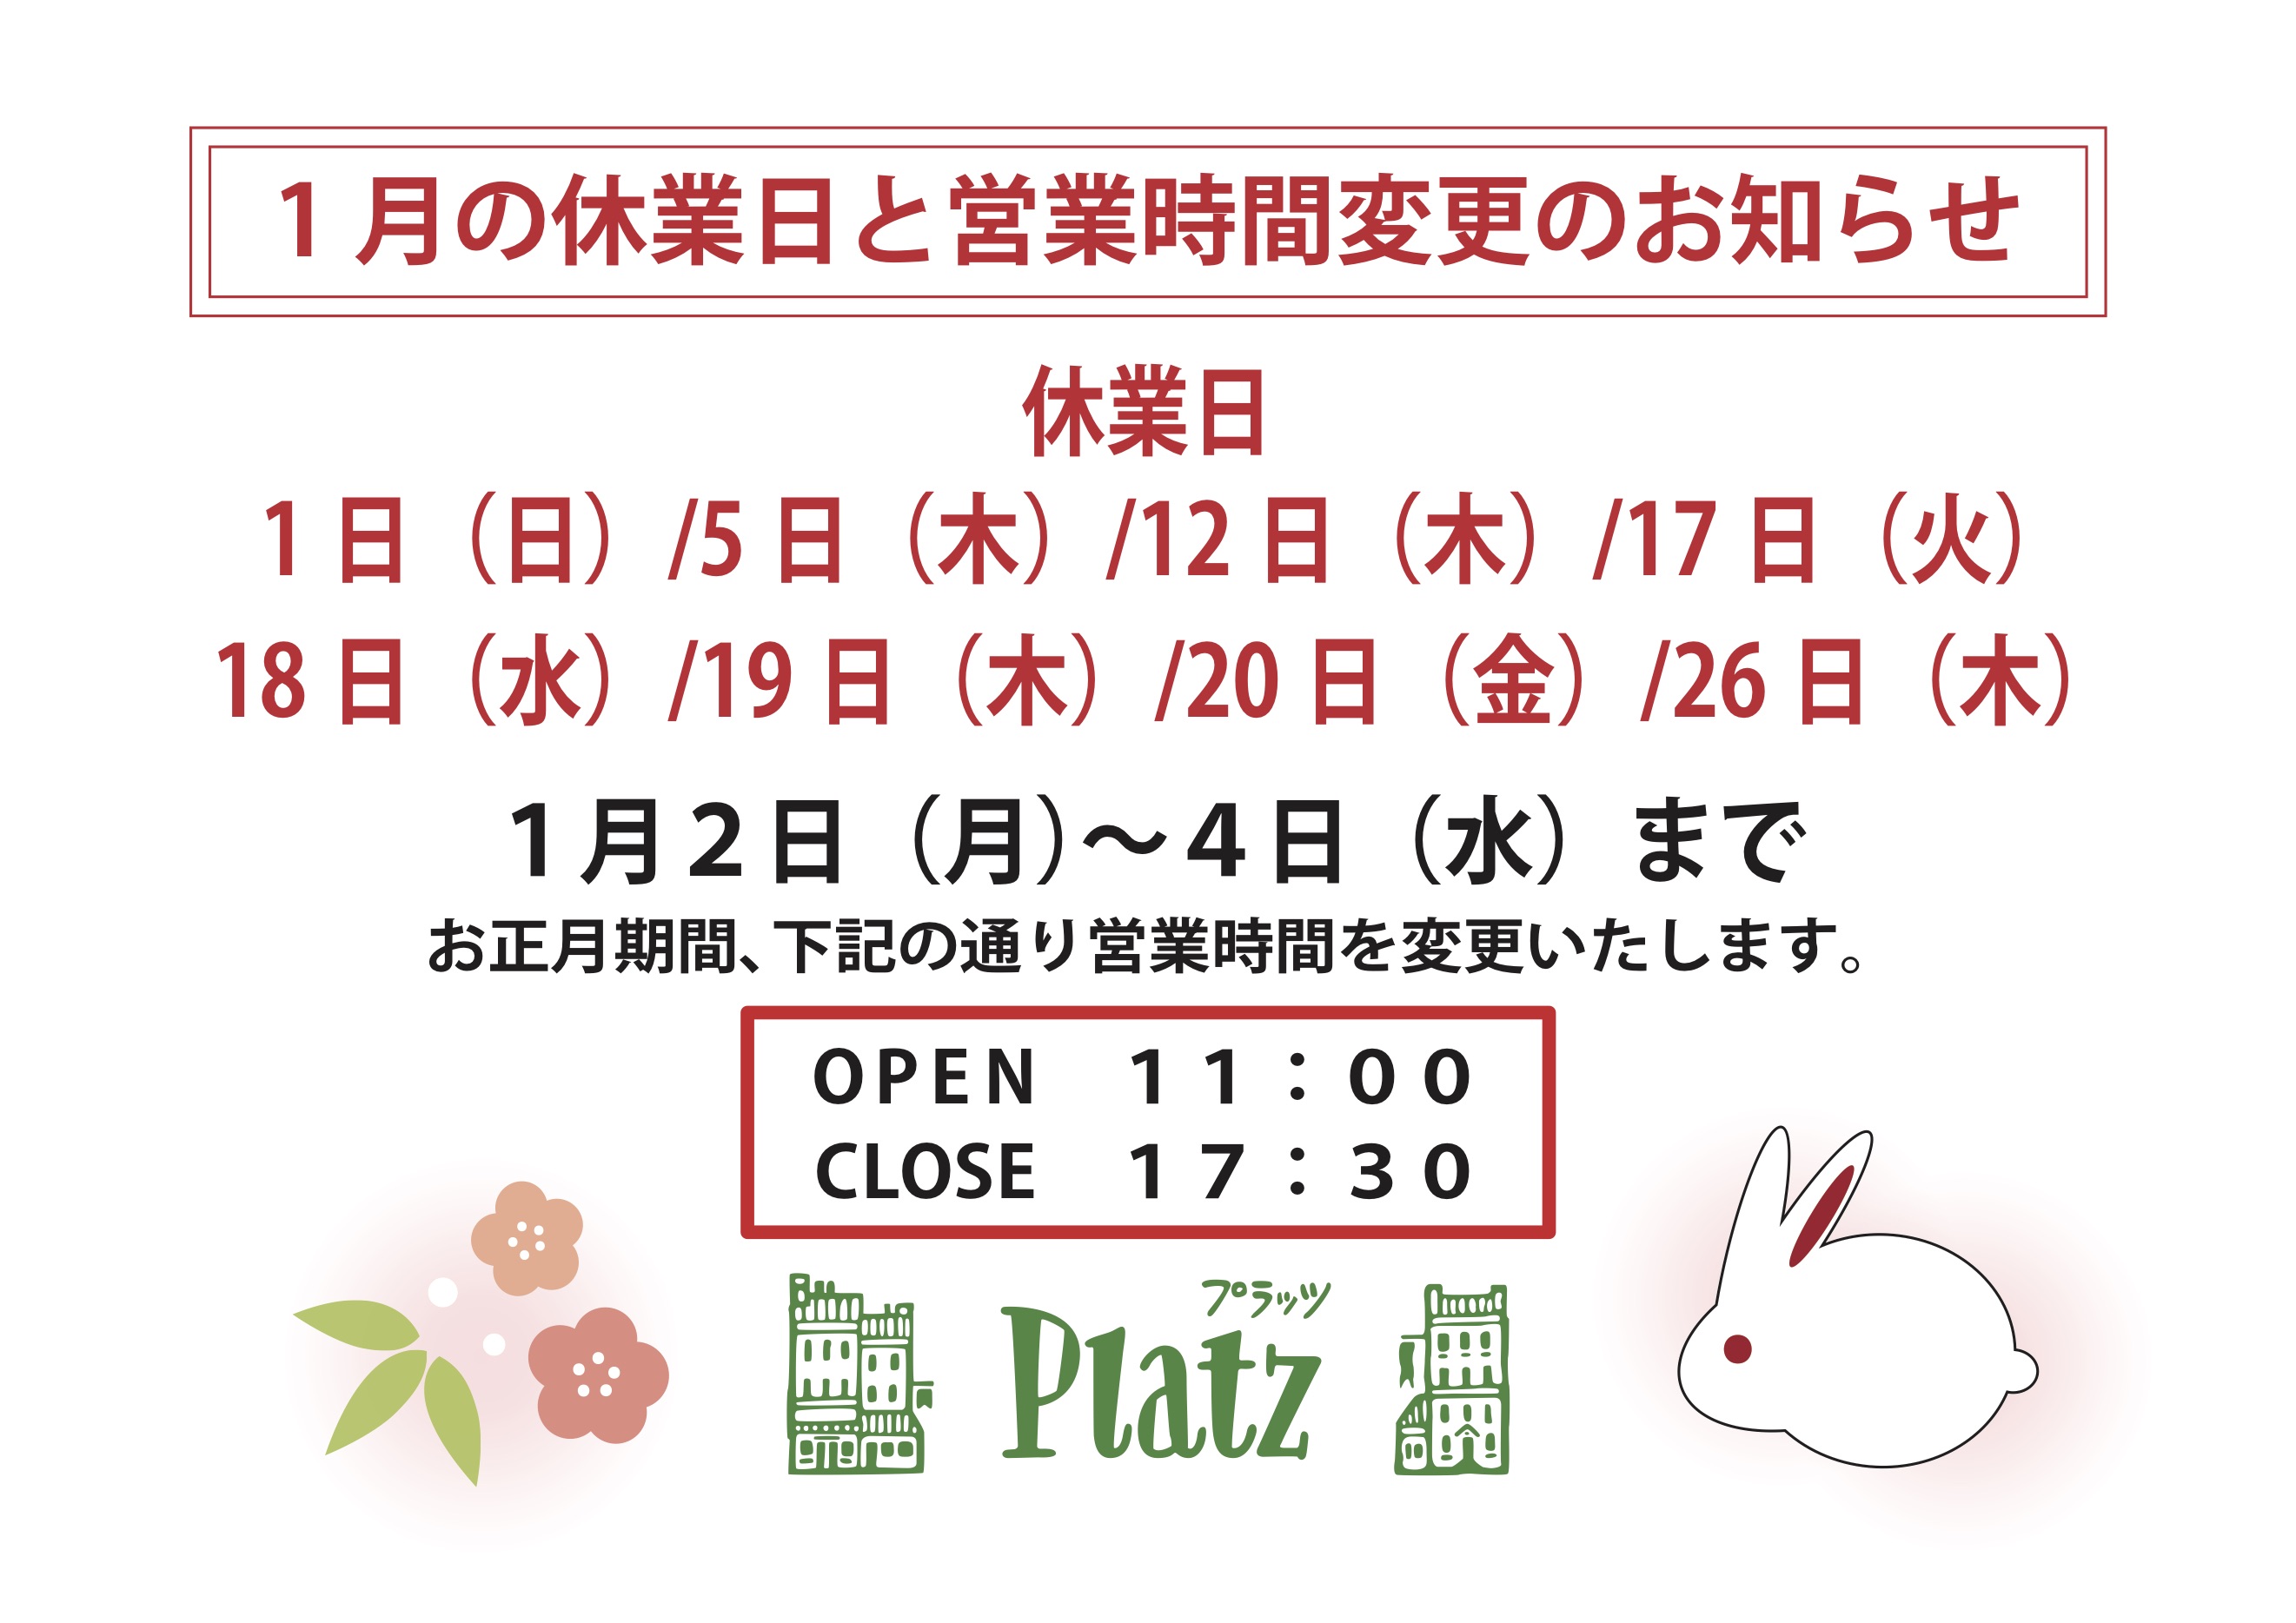 http://www.kyoto-platz.jp/news/images/2023.1%E6%9C%88%E4%BC%91%E6%A5%AD%E6%97%A5.jpg